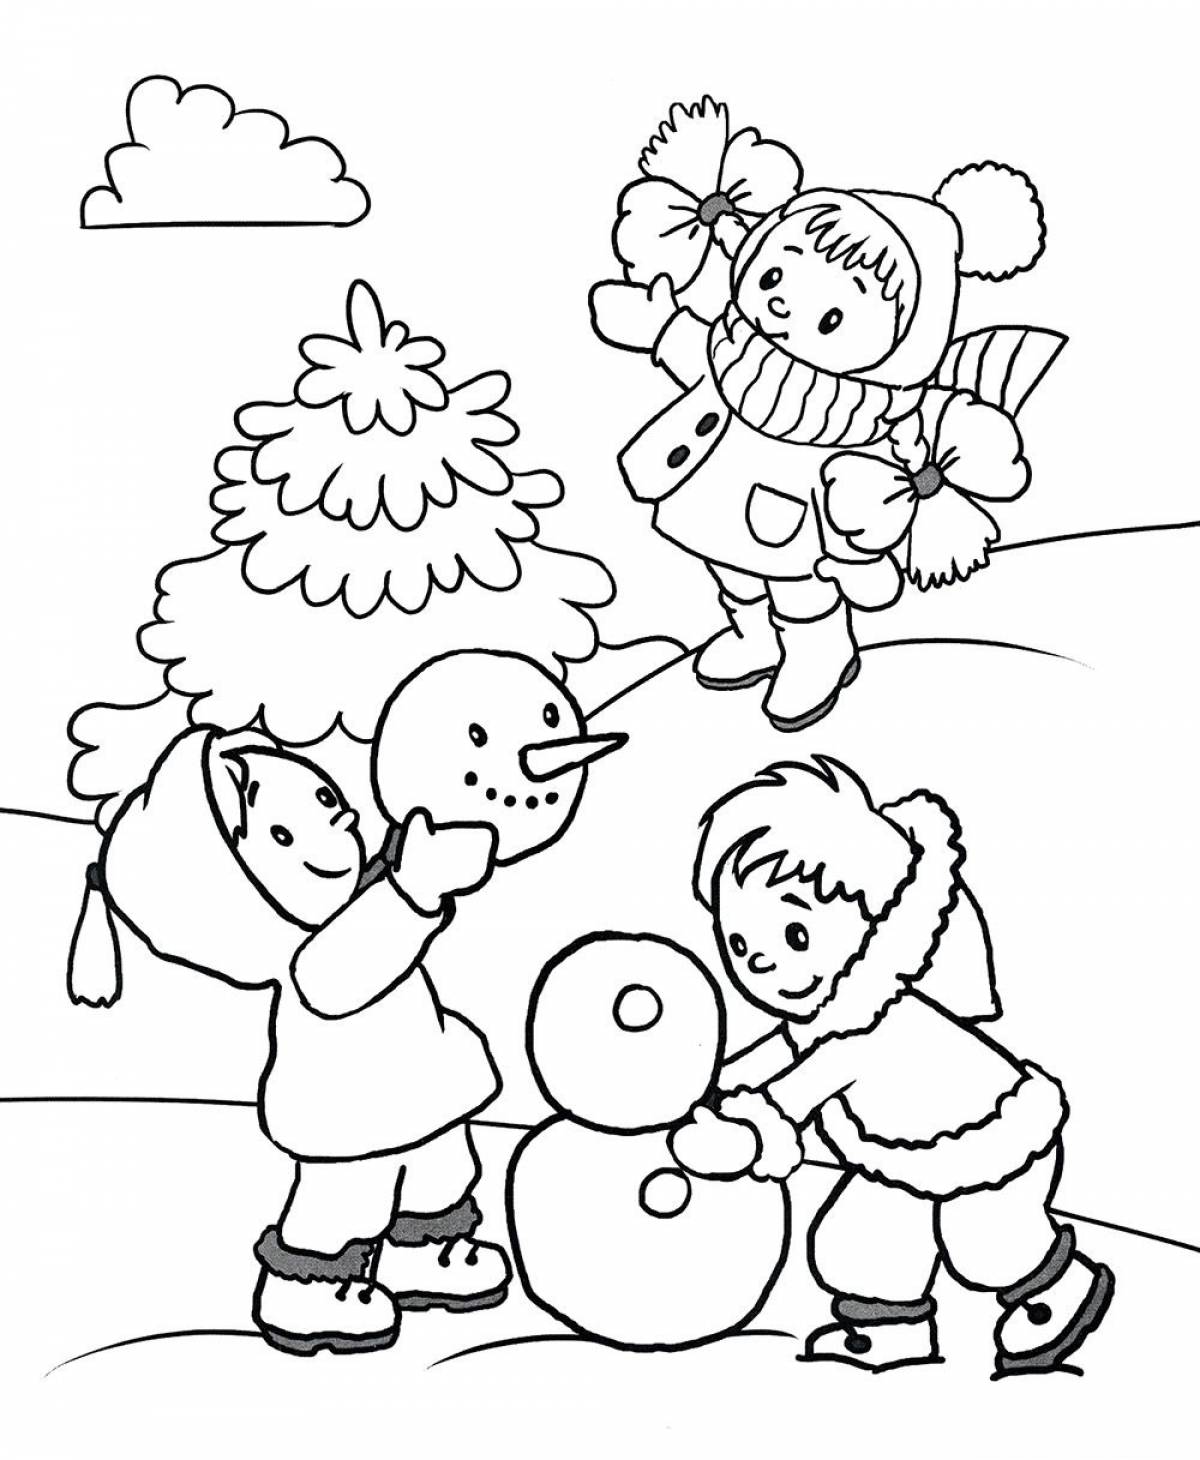 Children and snowman